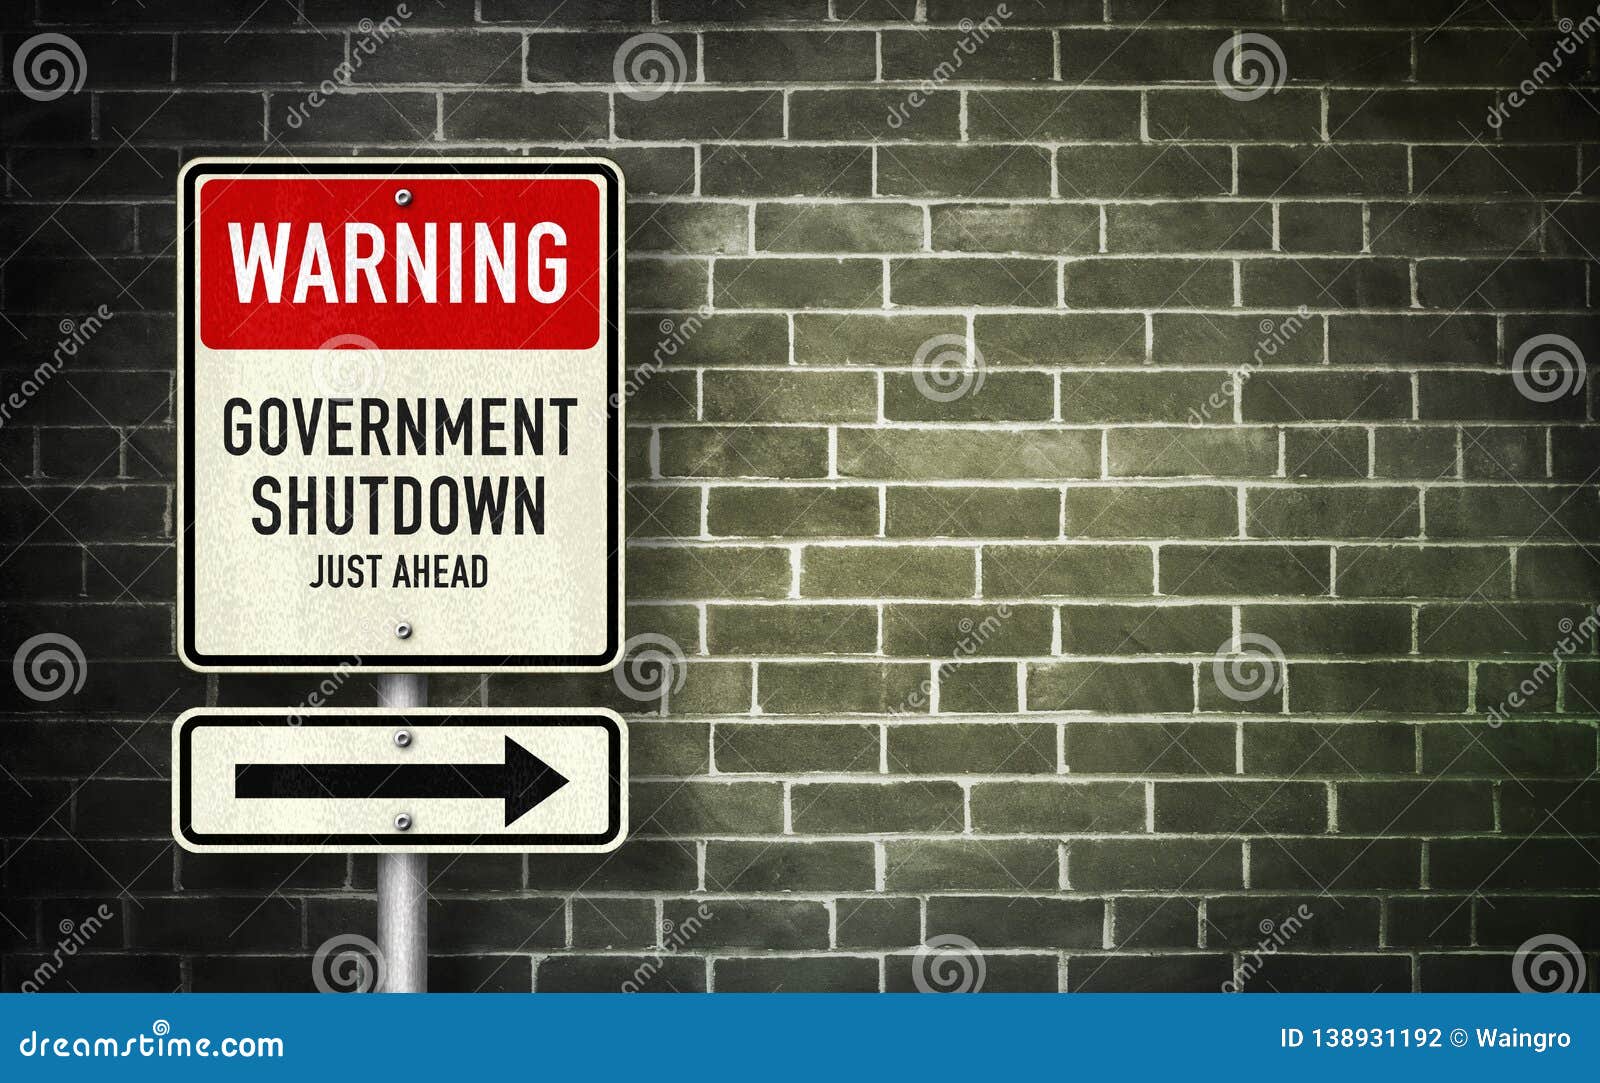 warning - government shutdown